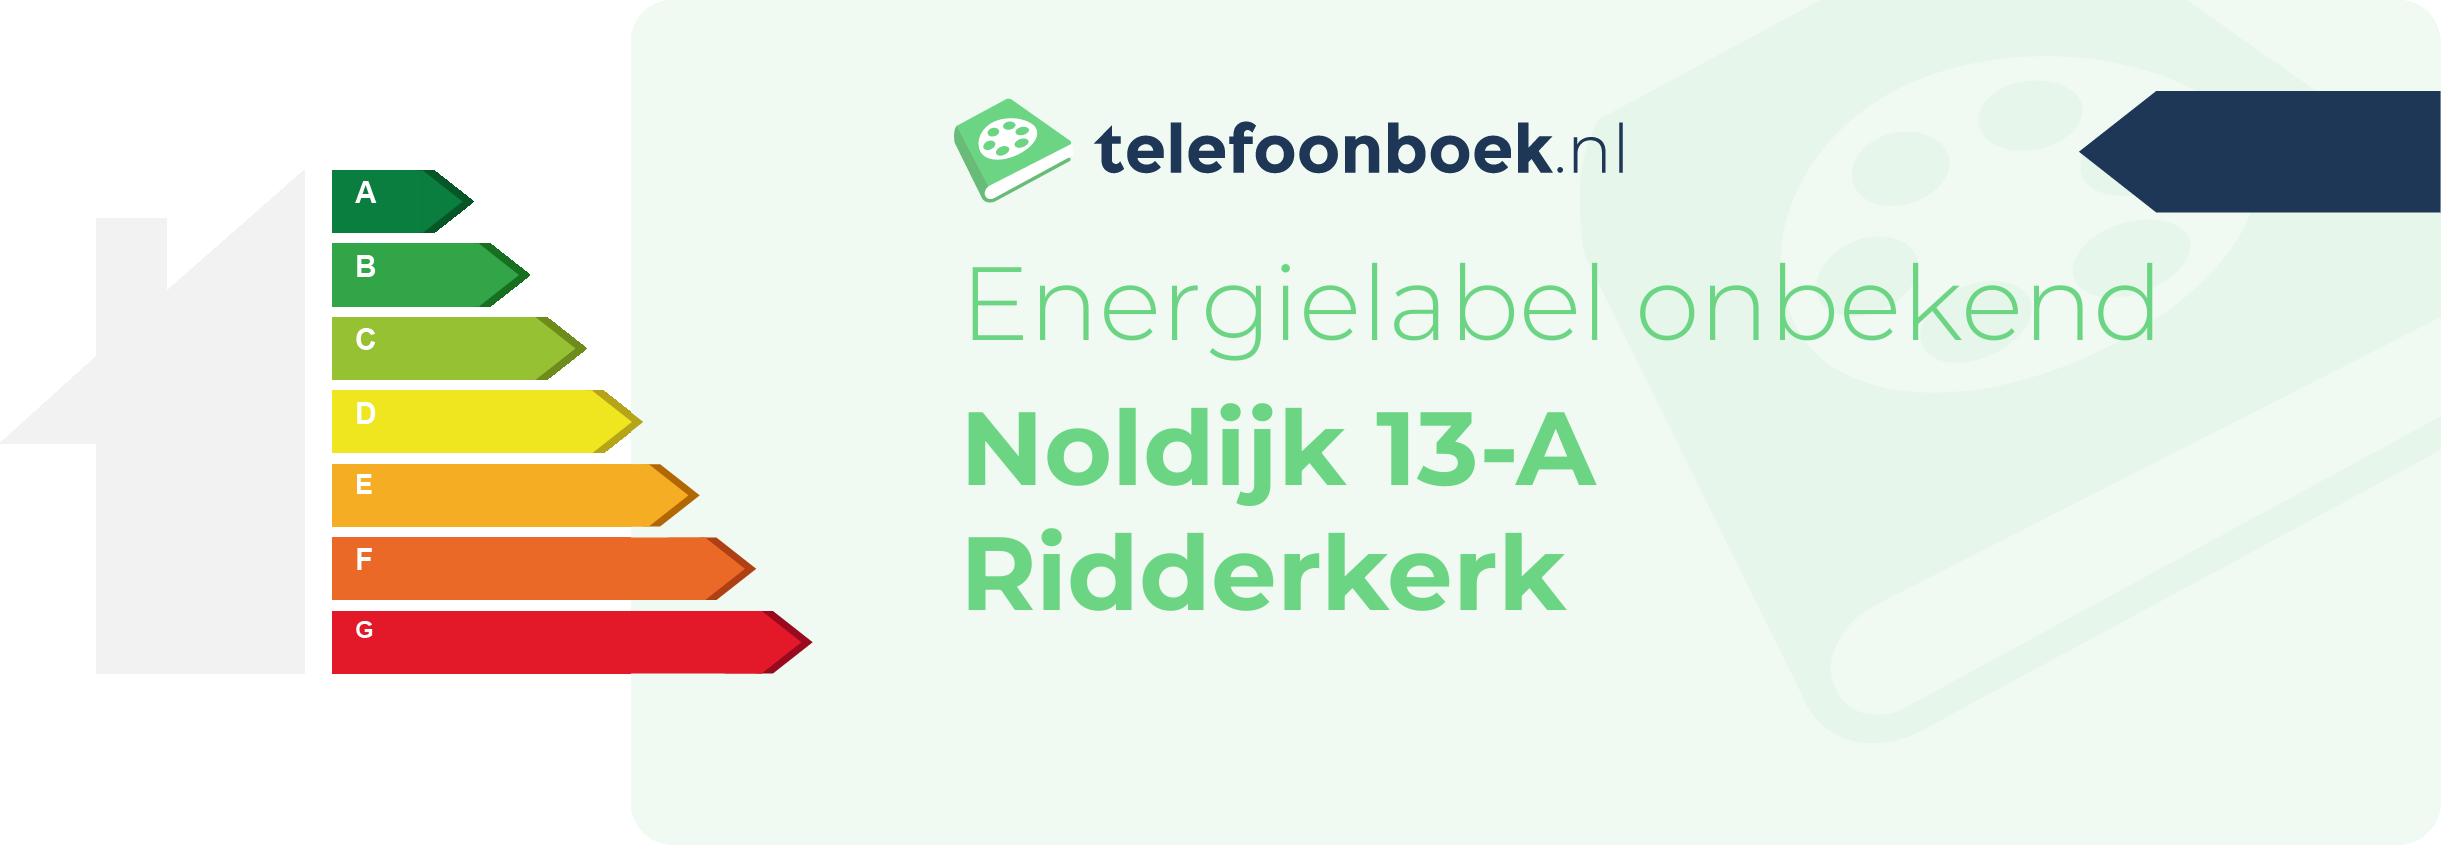 Energielabel Noldijk 13-A Ridderkerk